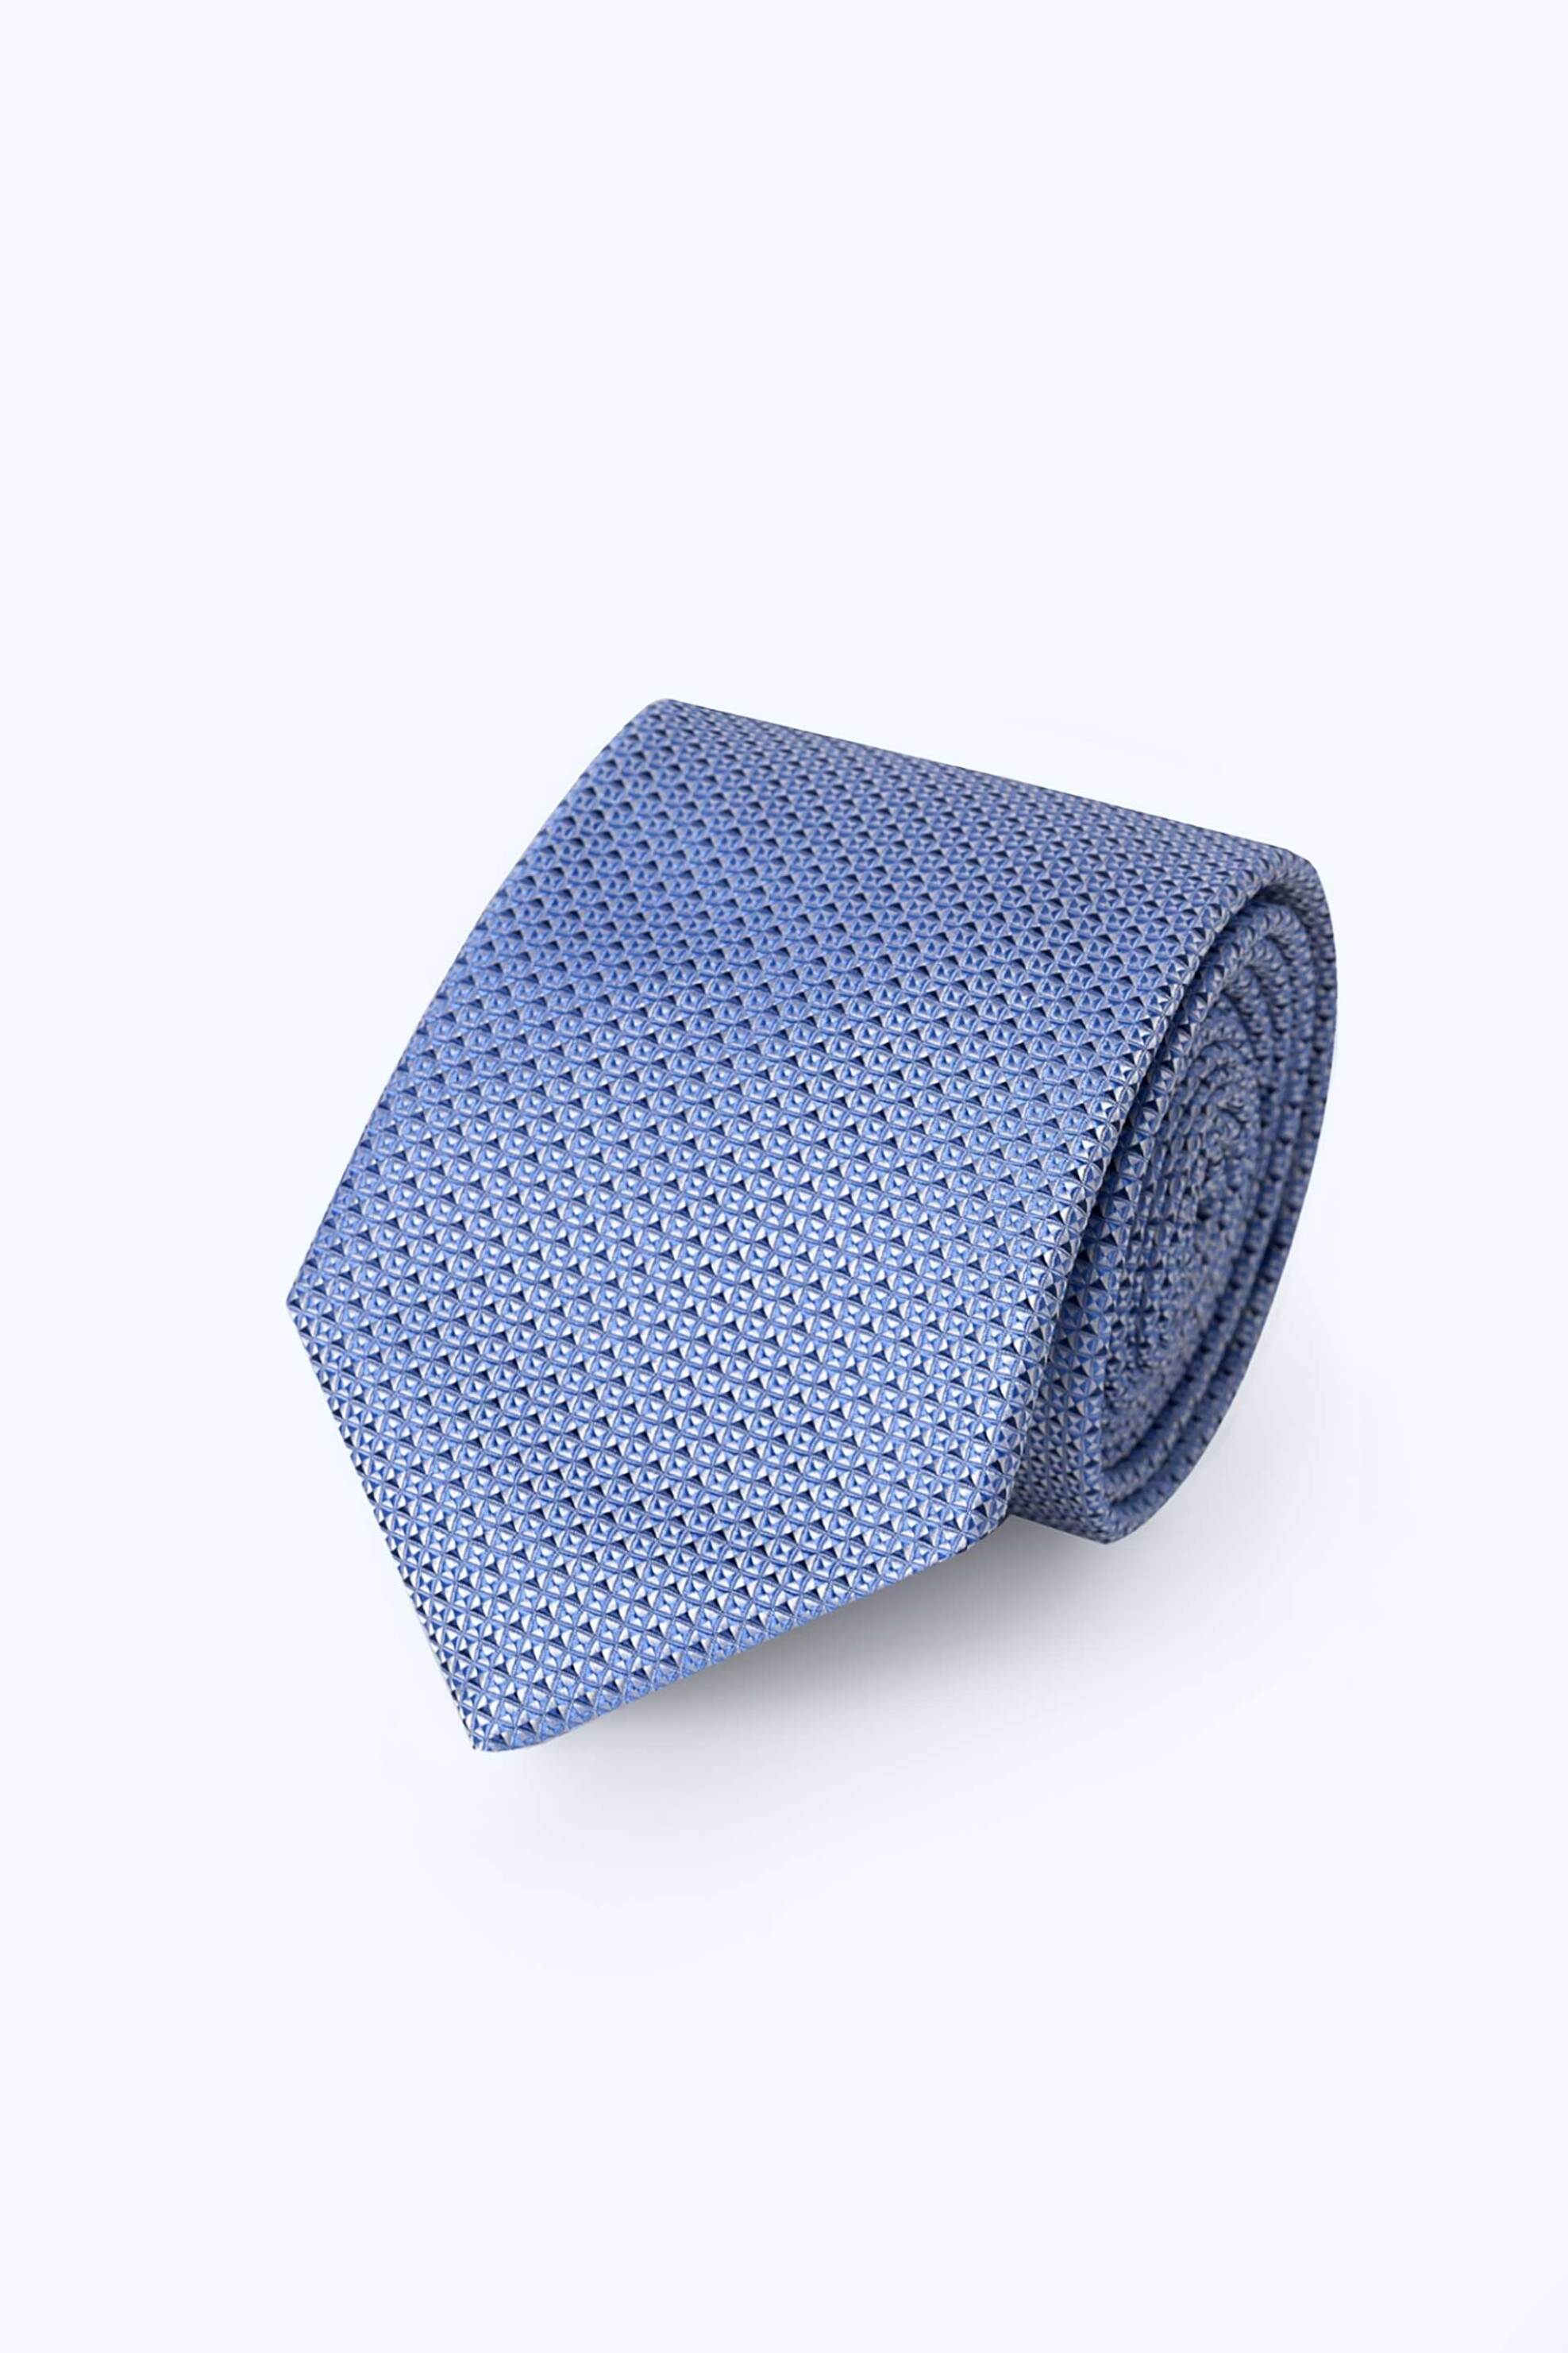 Ανδρική Μόδα > Ανδρικά Αξεσουάρ > Ανδρικές Γραβάτες & Παπιγιόν The Bostonians ανδρική μεταξωτή γραβάτα με μικροσχέδιο "Dobby" - TIE2882 Μπλε Ανοιχτό